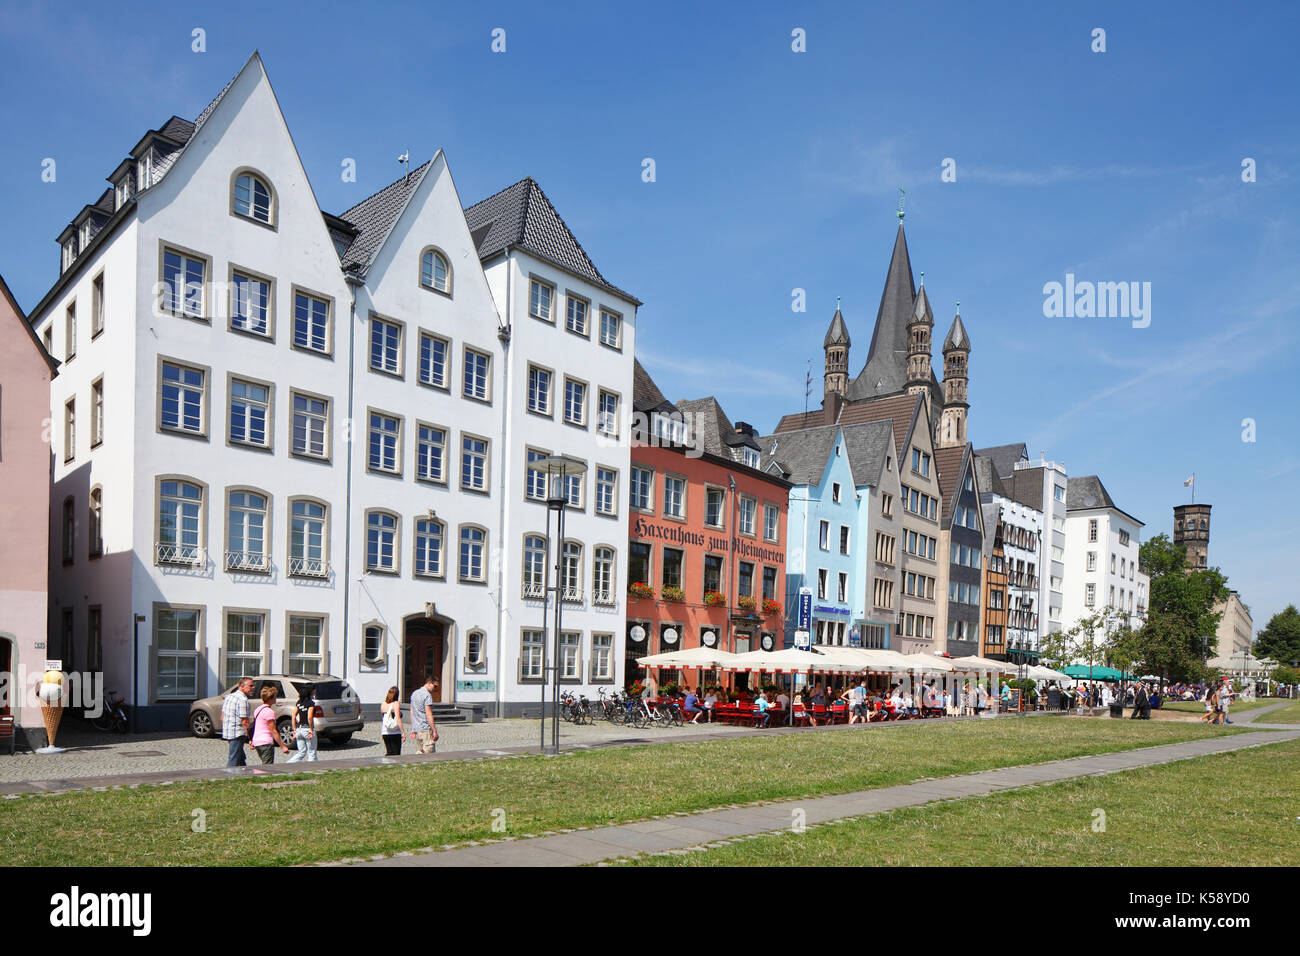 Häuser am Rheinufer, Köln, Nordrhein-Westfalen, Deutschland  I Houses in old Town, Cologne, North Rhine-Westphalia, Germany Stock Photo